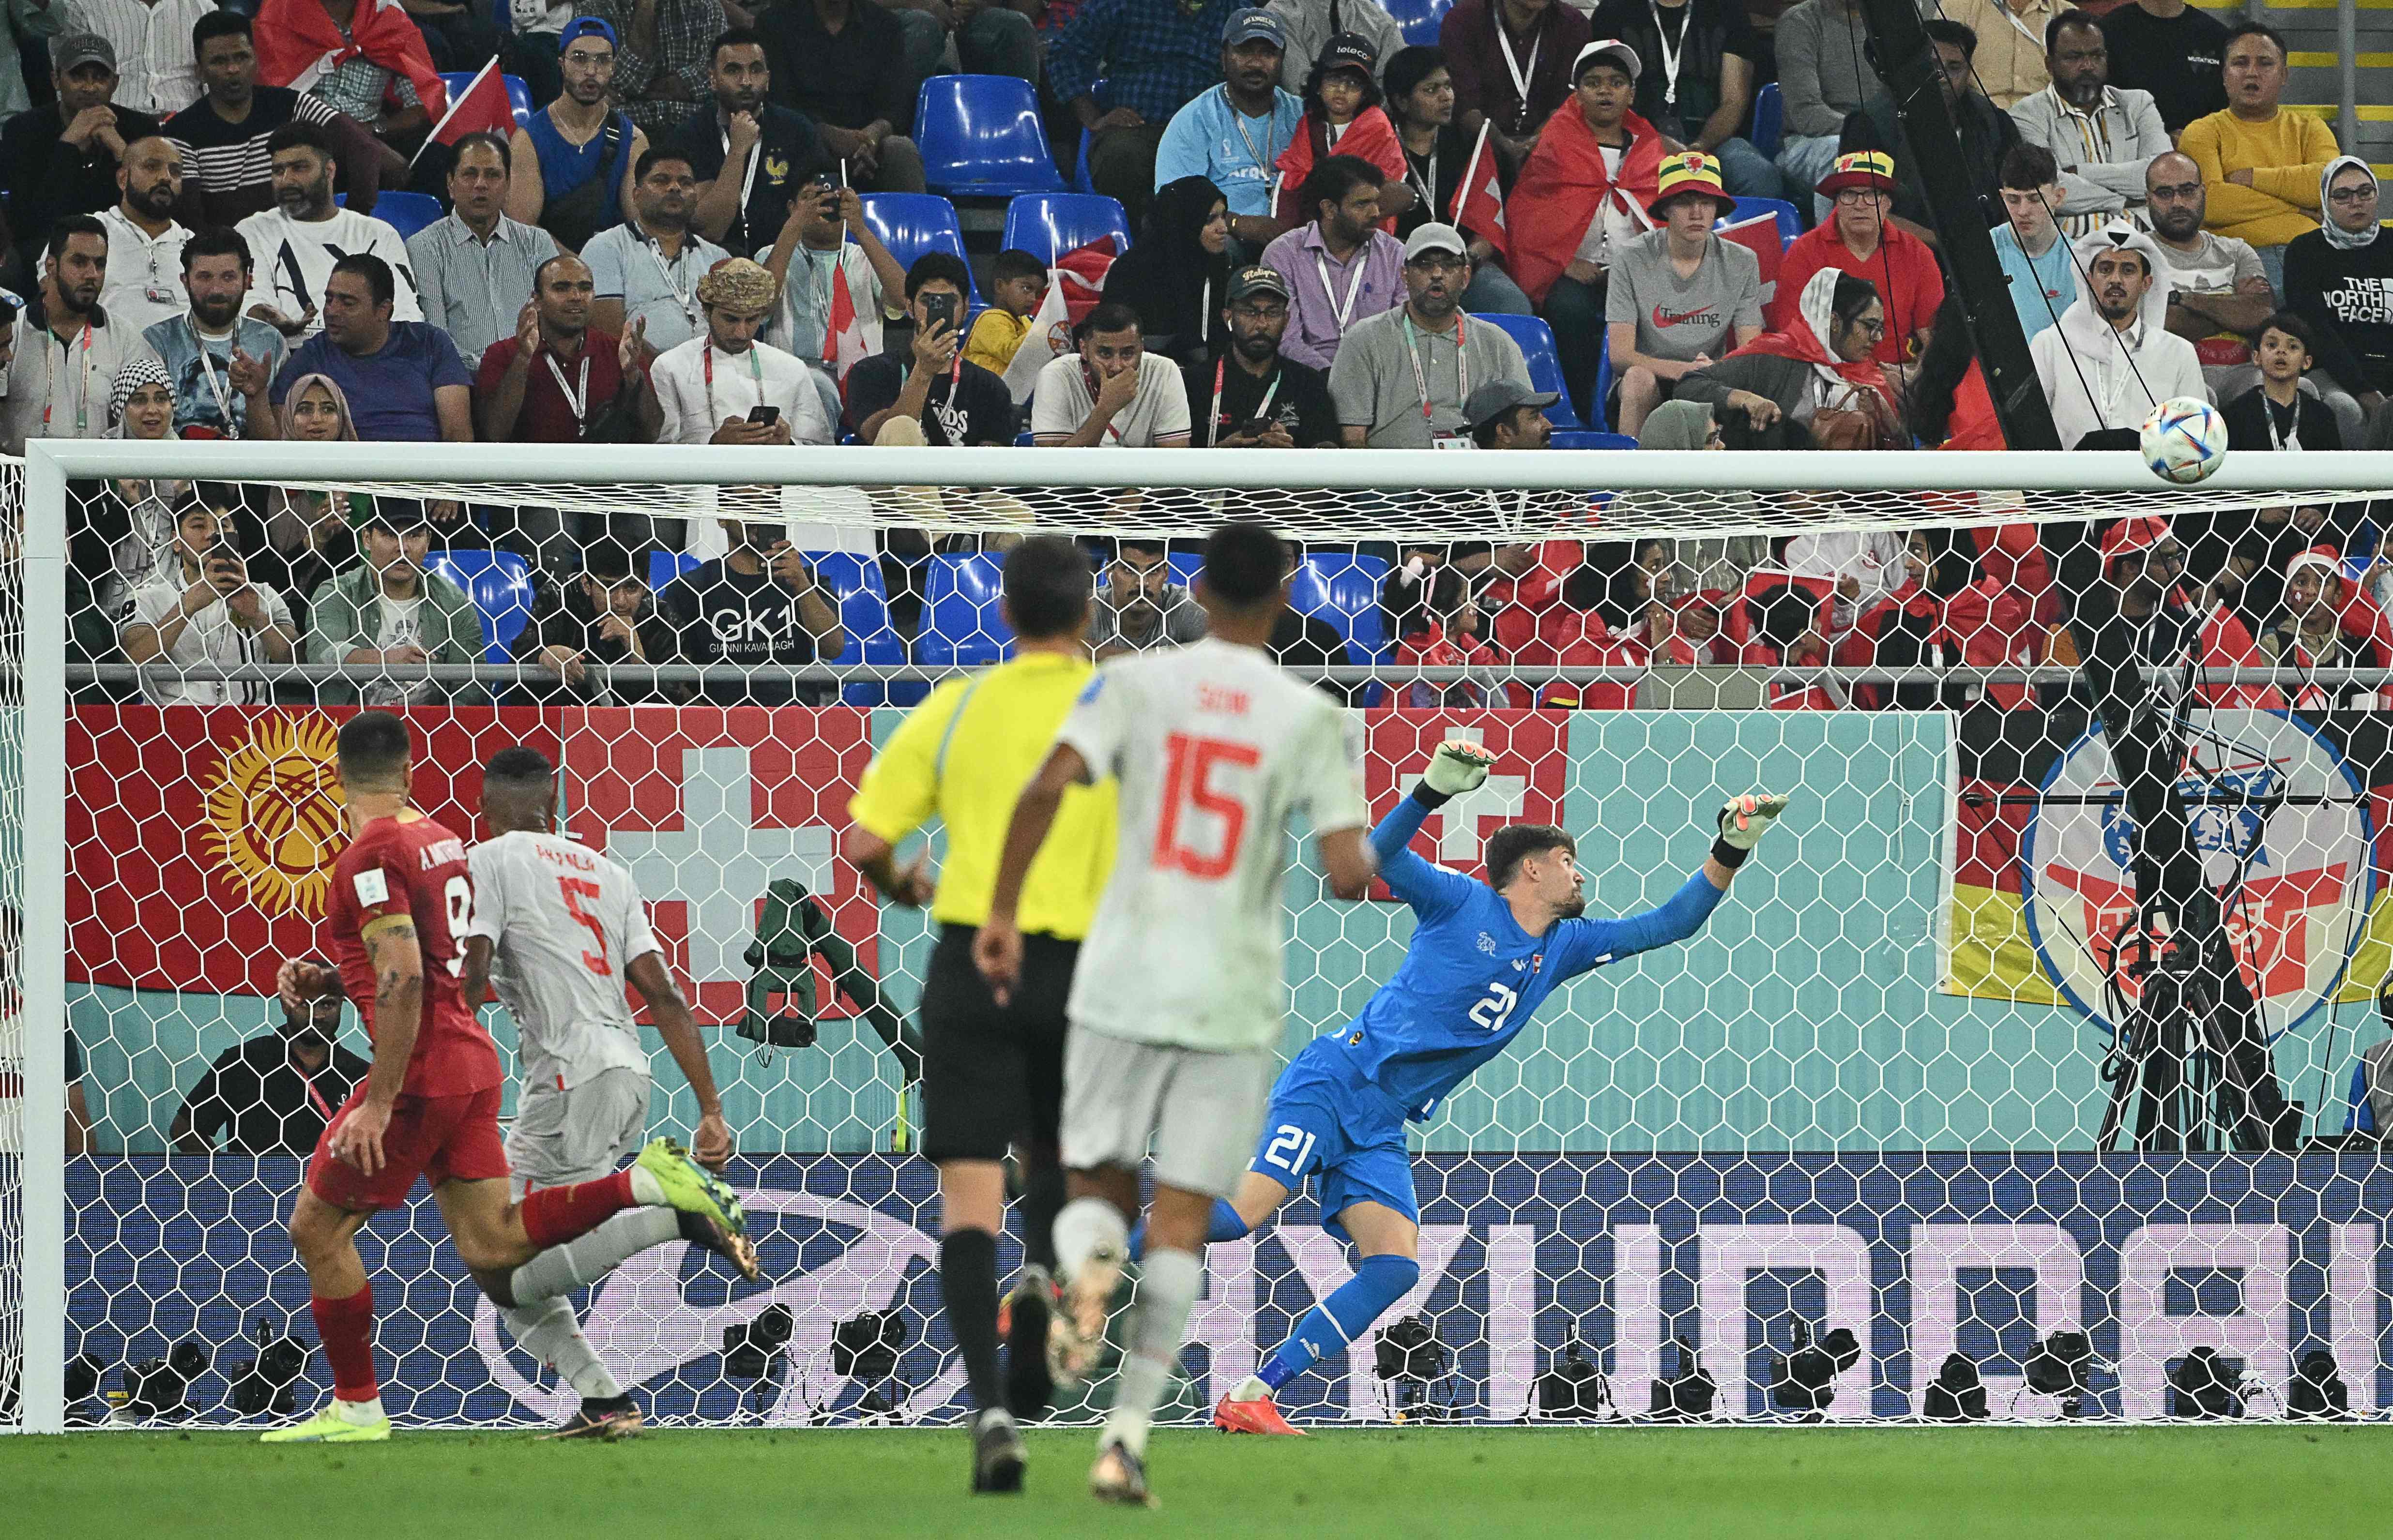 (ÖZET) Sırbistan - İsviçre maç sonucu: 2-3 (2022 Dünya Kupası G Grubu) | İsviçre, son 16da